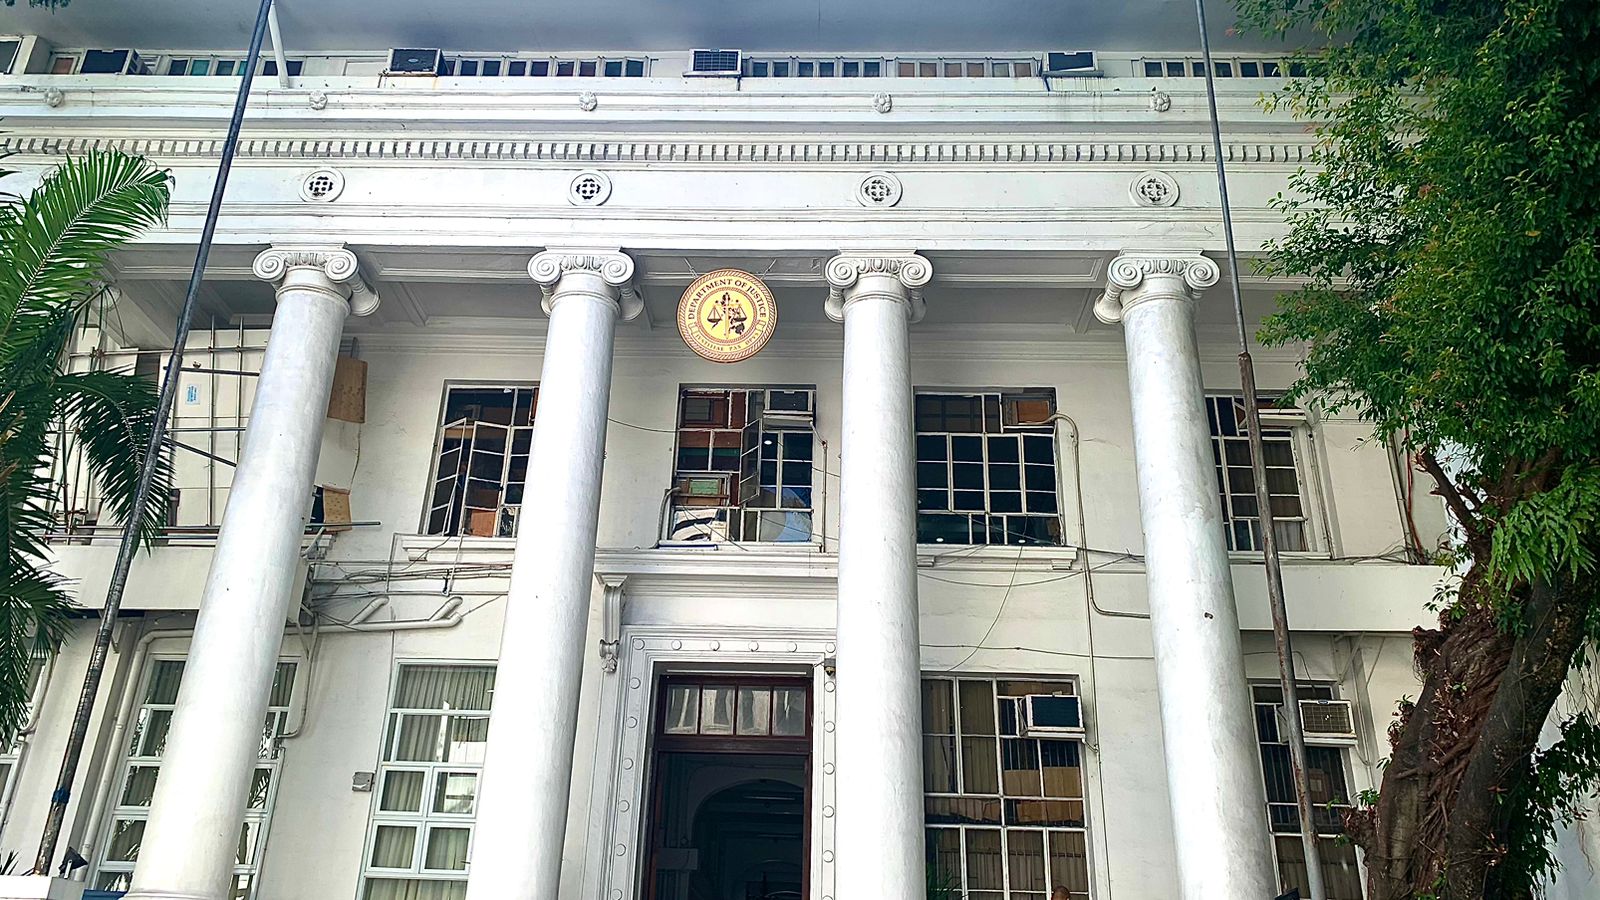 Department of Justice (DOJ) facade